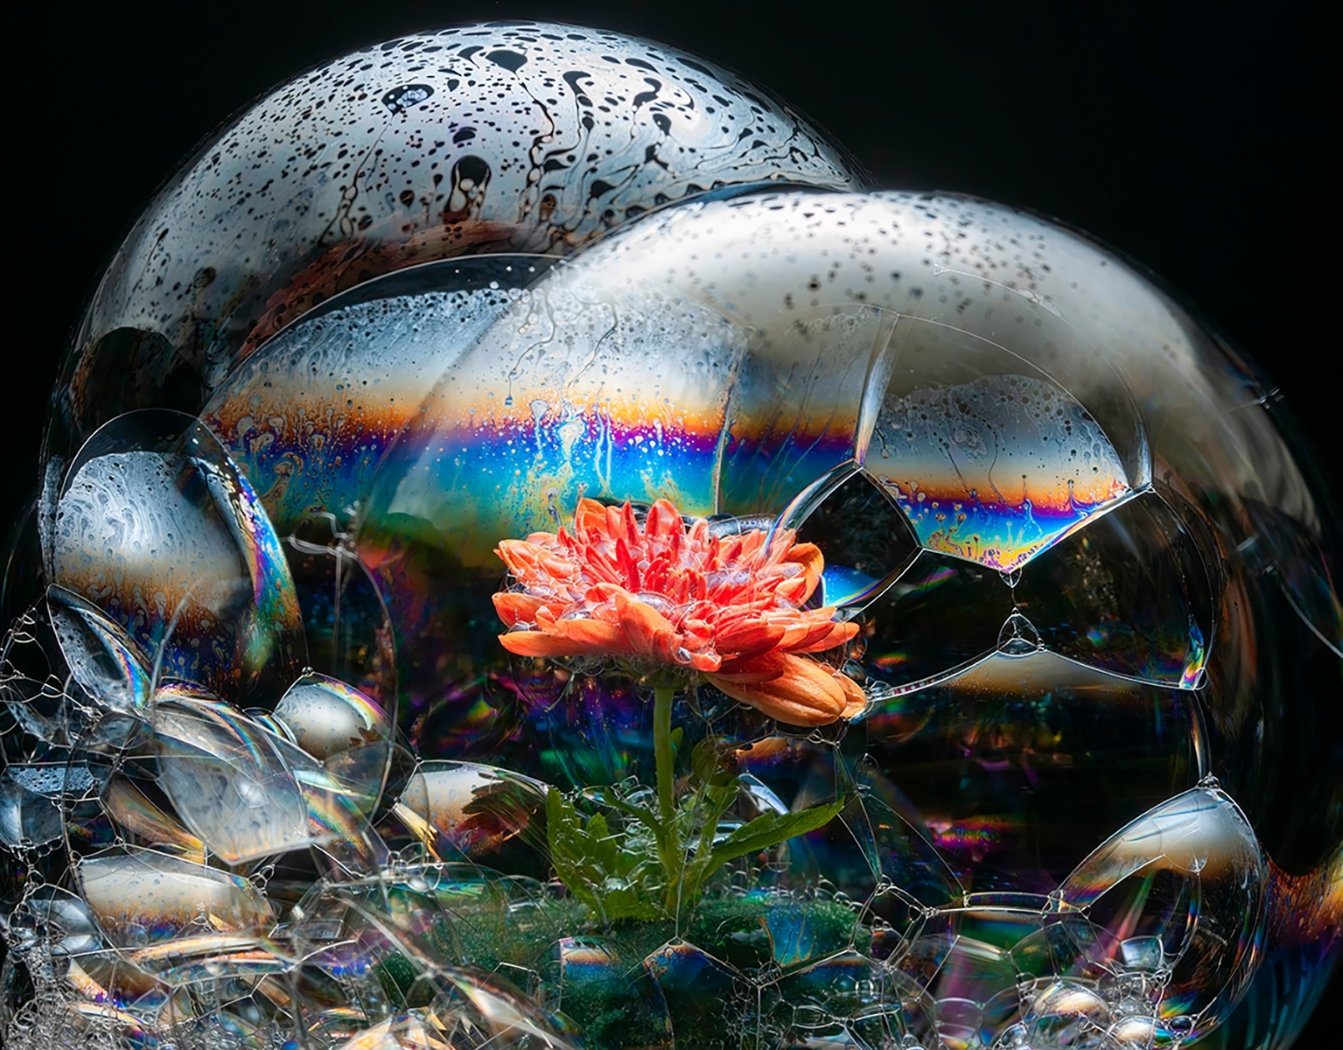 Bubble Flower, David Kors, Louisiana Photographic Society, 2 HM